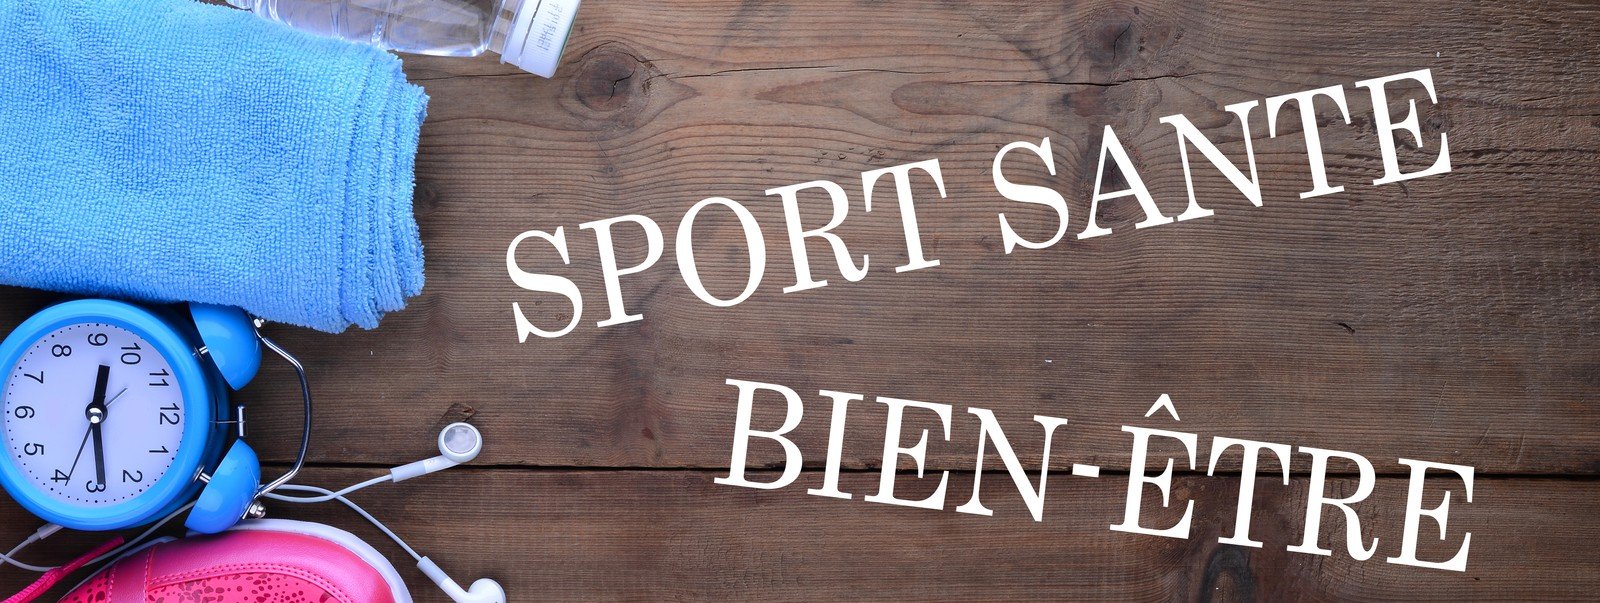 Les plans régionaux et le site portail « Sport Santé Bien-Etre »